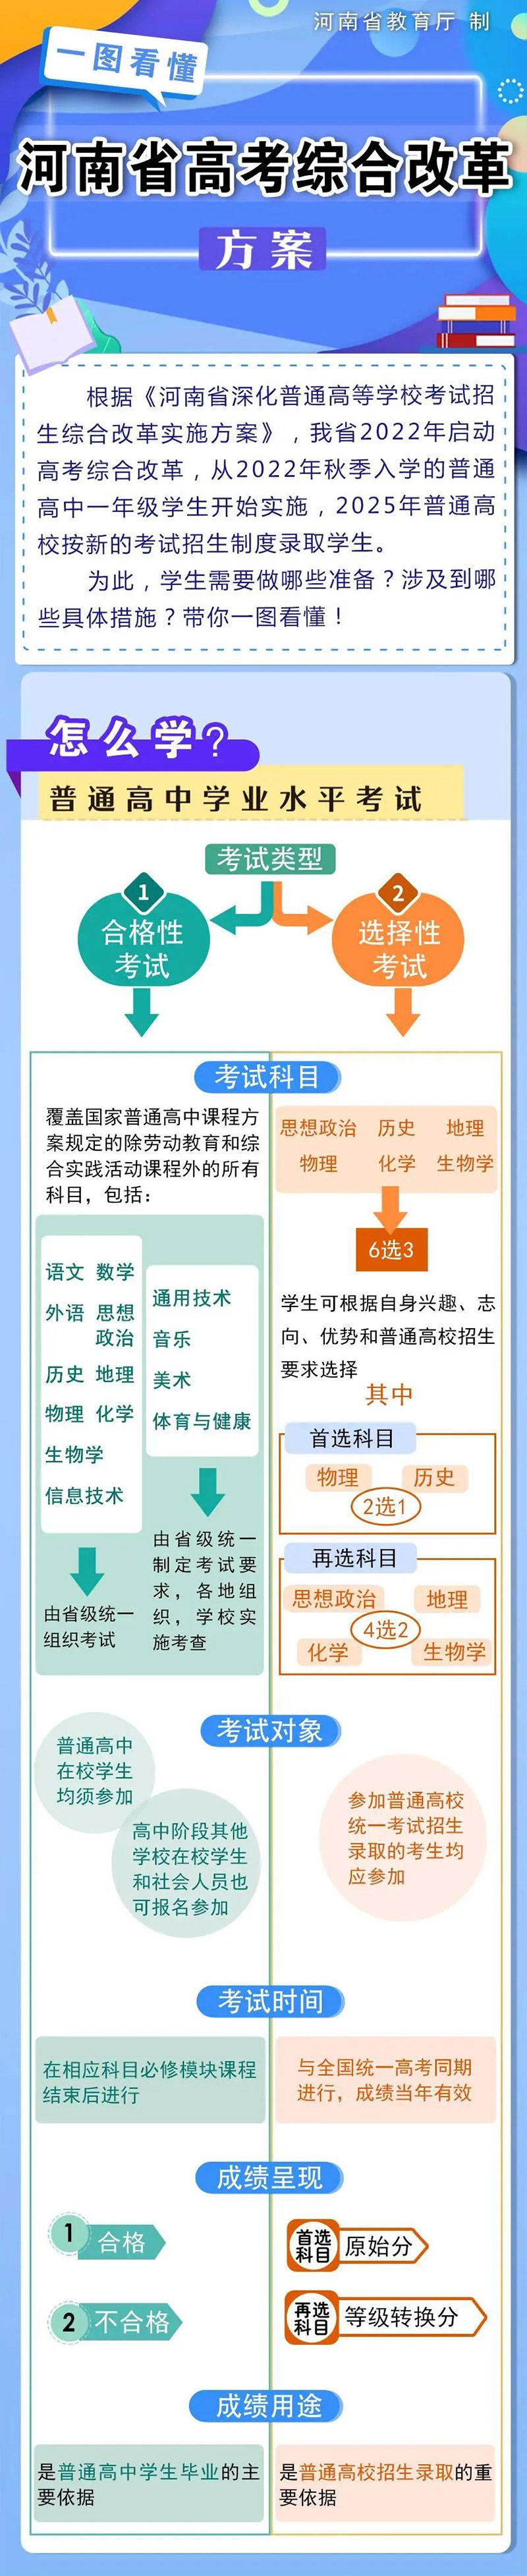 河南省高考综合改革方案